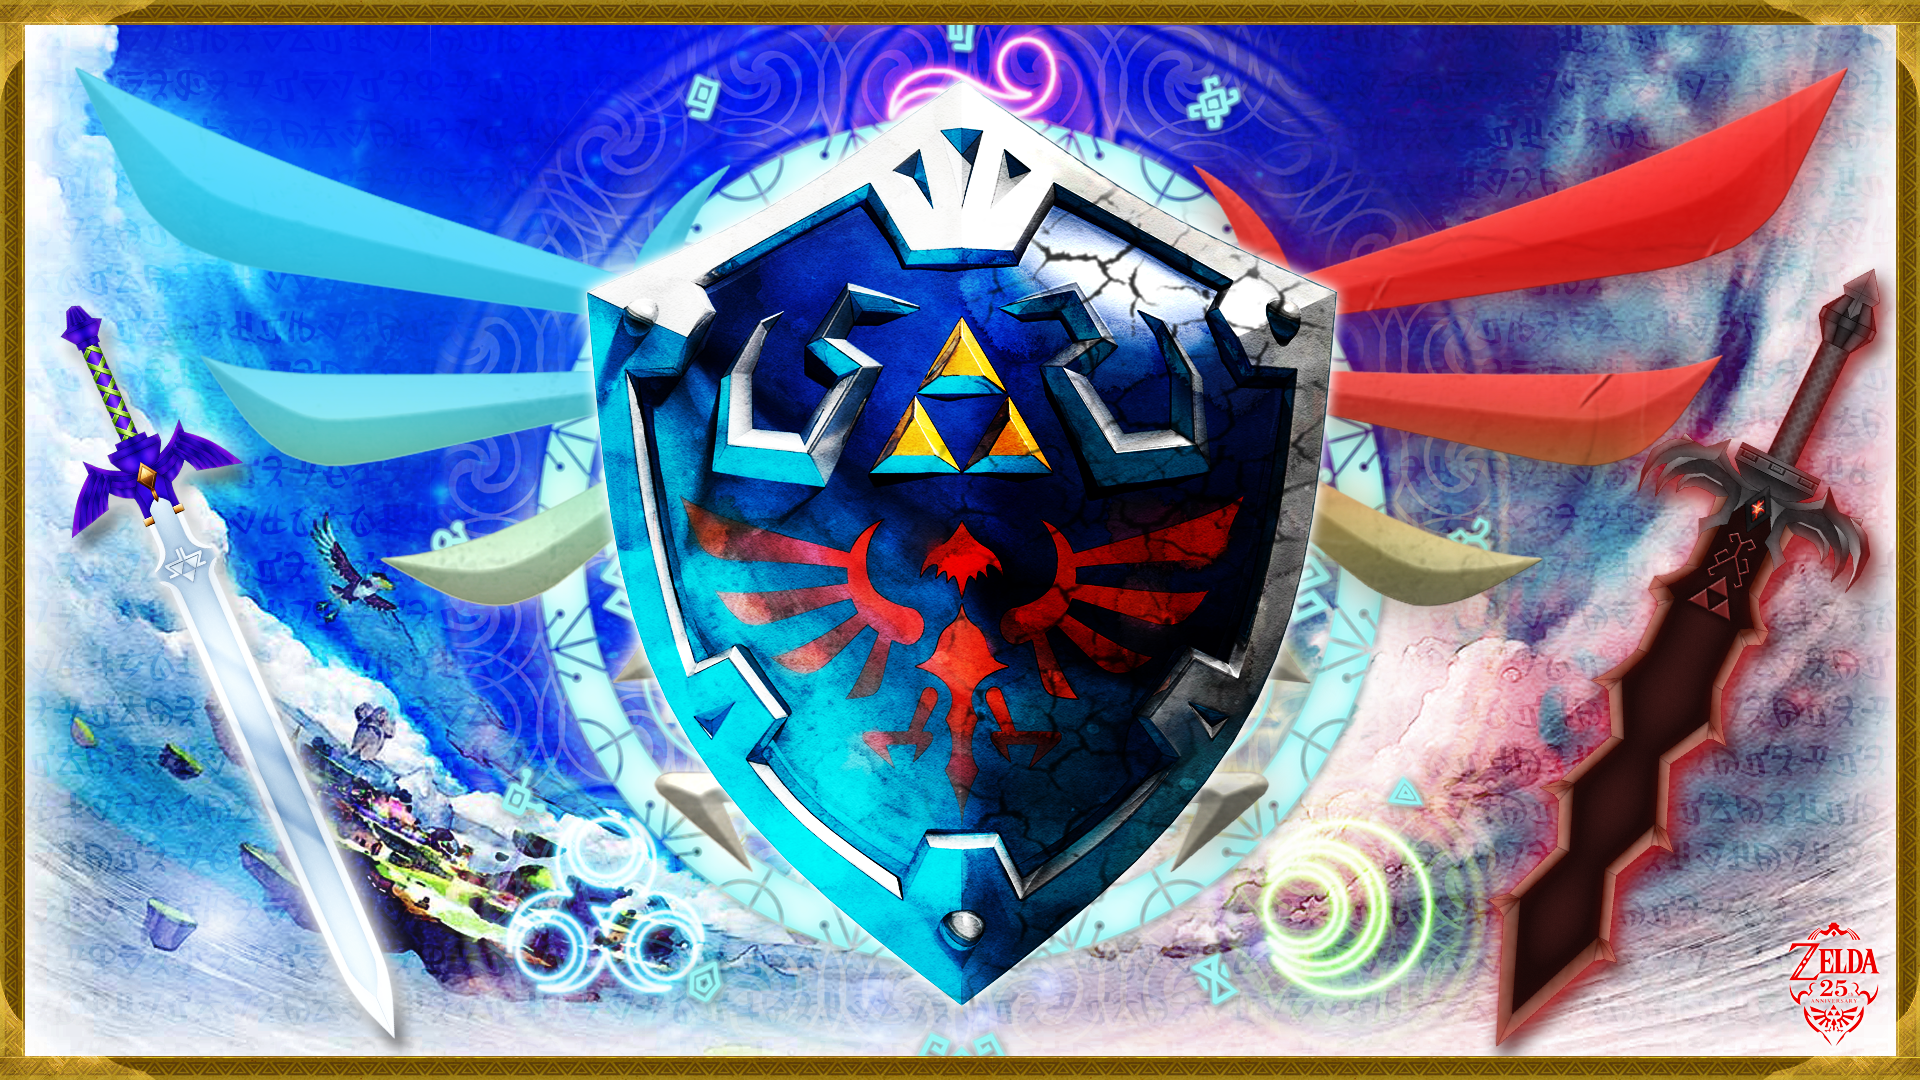 The Legend Of Zelda: Skyward Sword Wallpapers